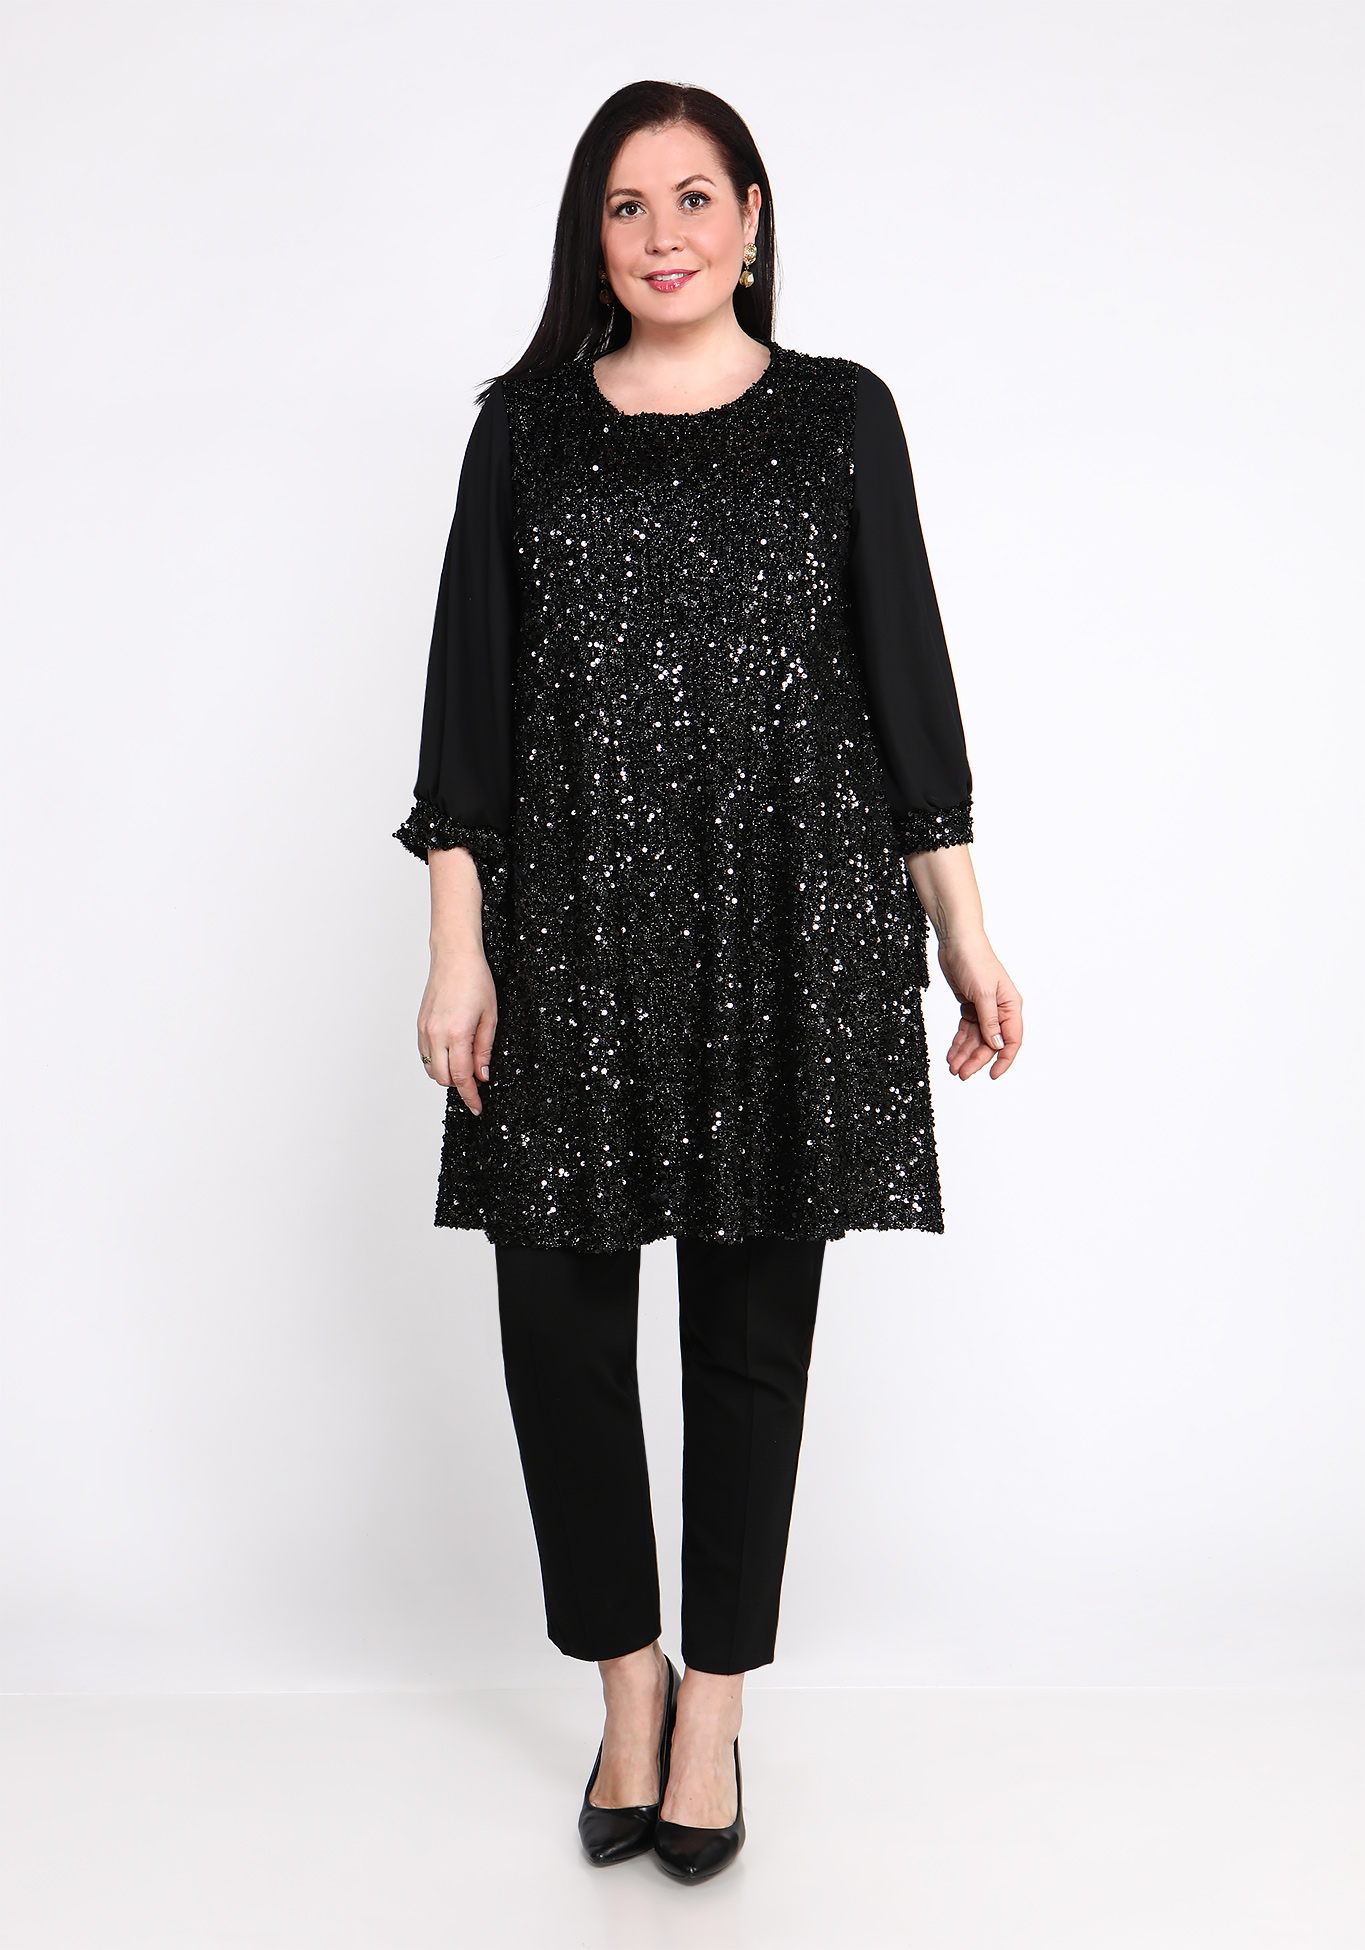 Платье "Сияние звезд" Lomara, размер 48, цвет чёрный - фото 2